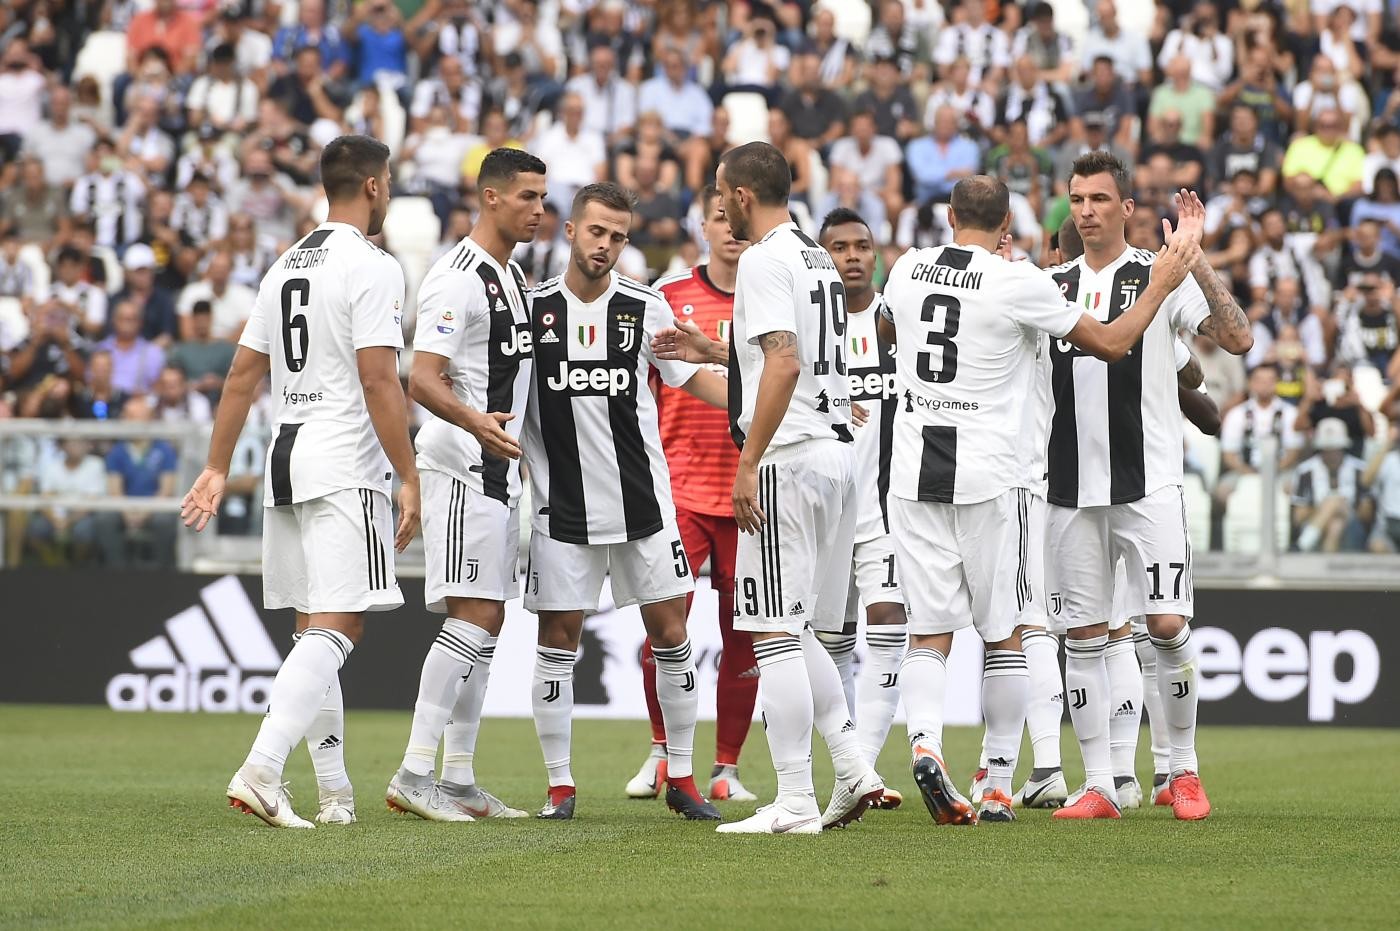 Juventus: debito record, operazioni sul capitale?